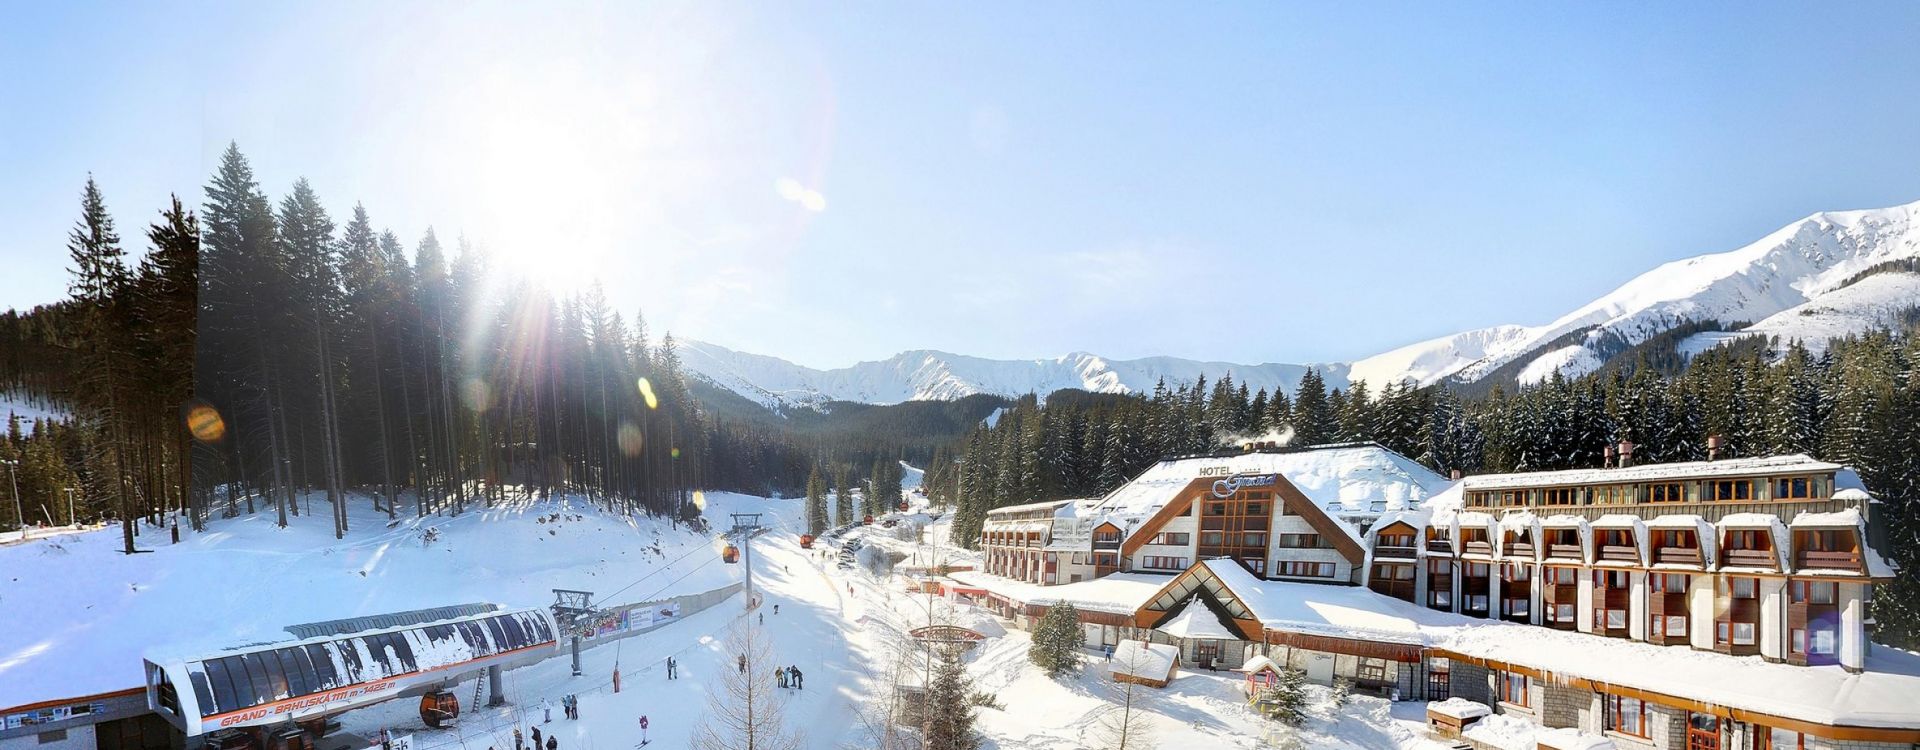 Wellness Hotel Grand Jasná - Týdenní lyžovačka s nocí zdarma!